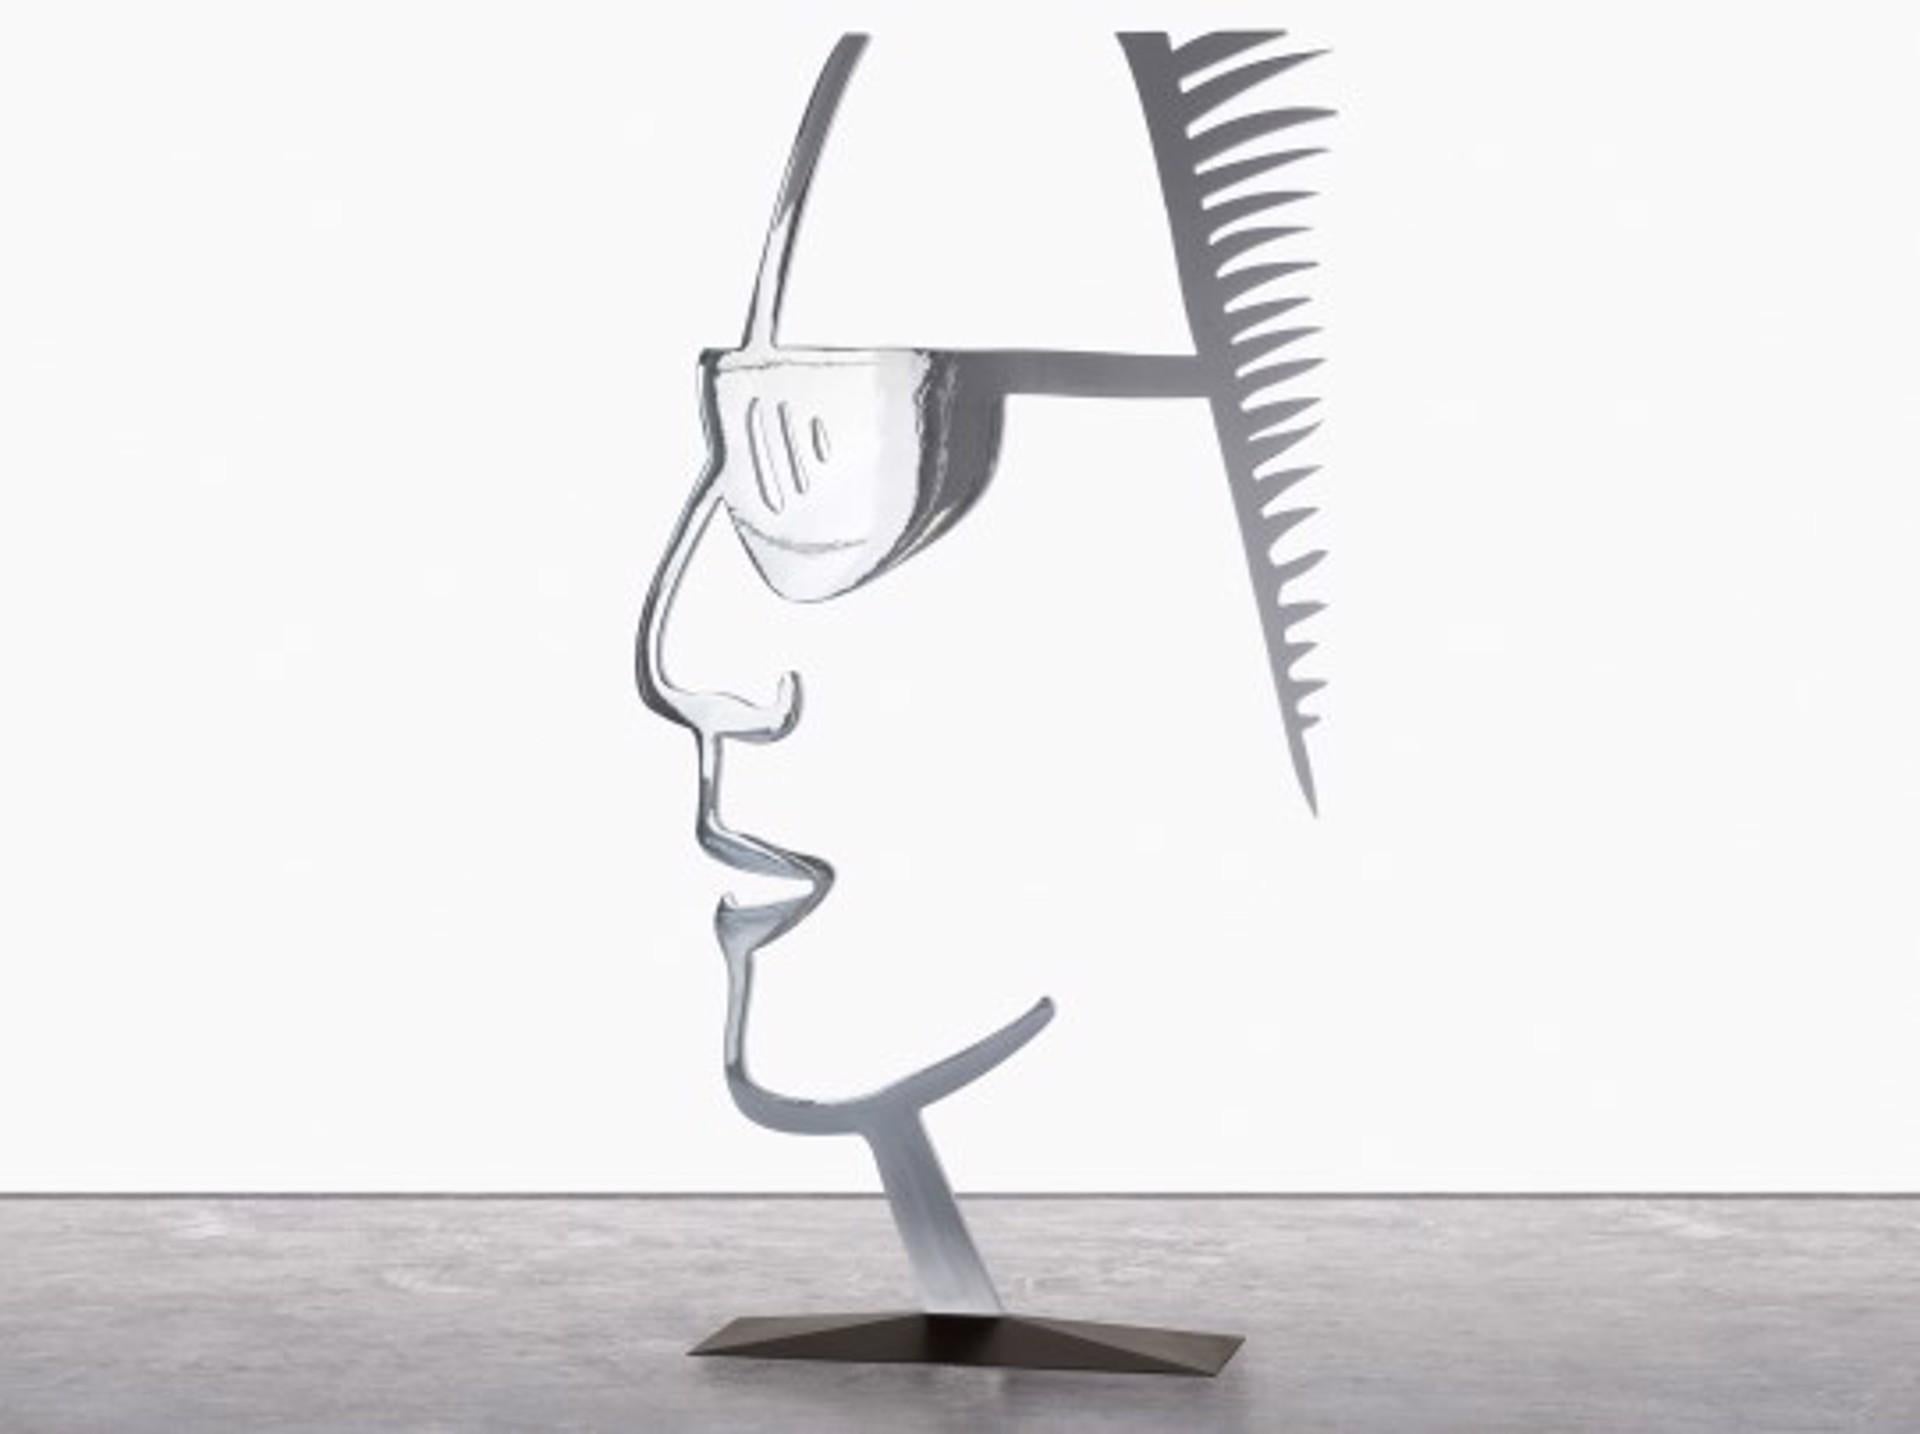 Ada avec des lunettes de soleil (AP 2/2) - Sculpture de Alex Katz